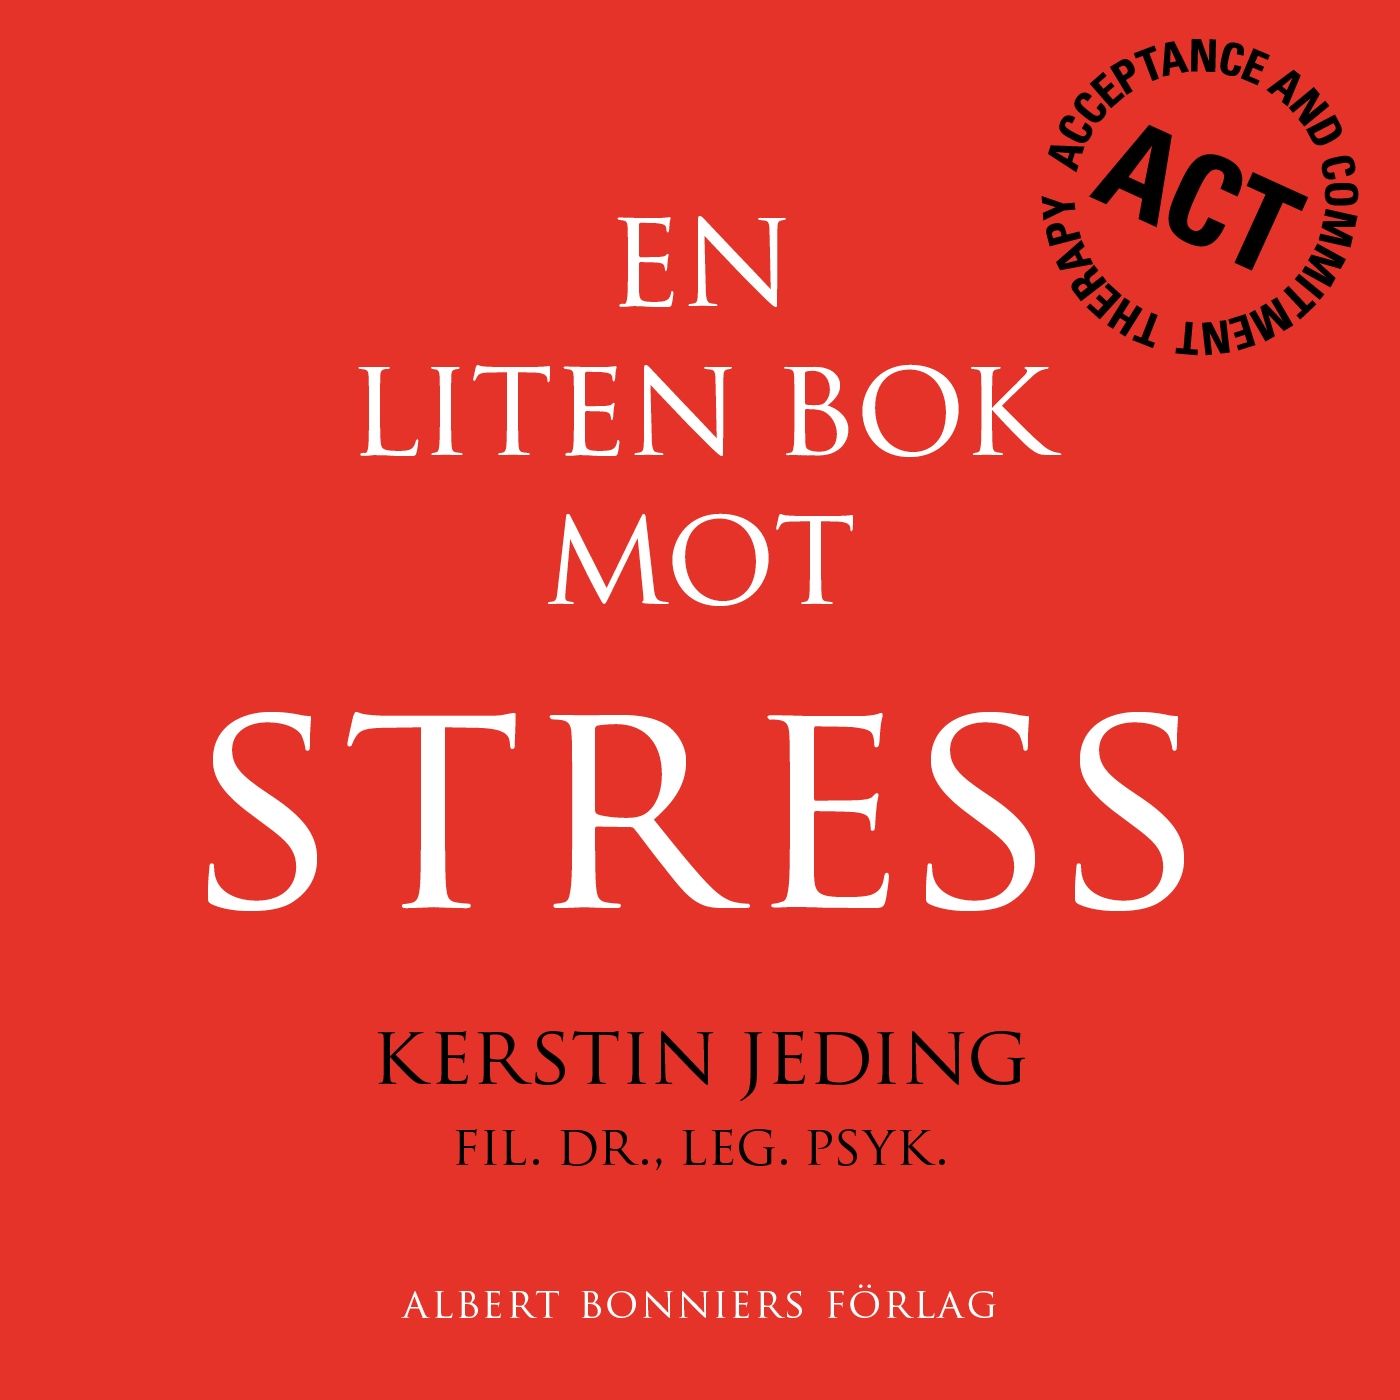 En liten bok mot stress, eBook by Kerstin Jeding